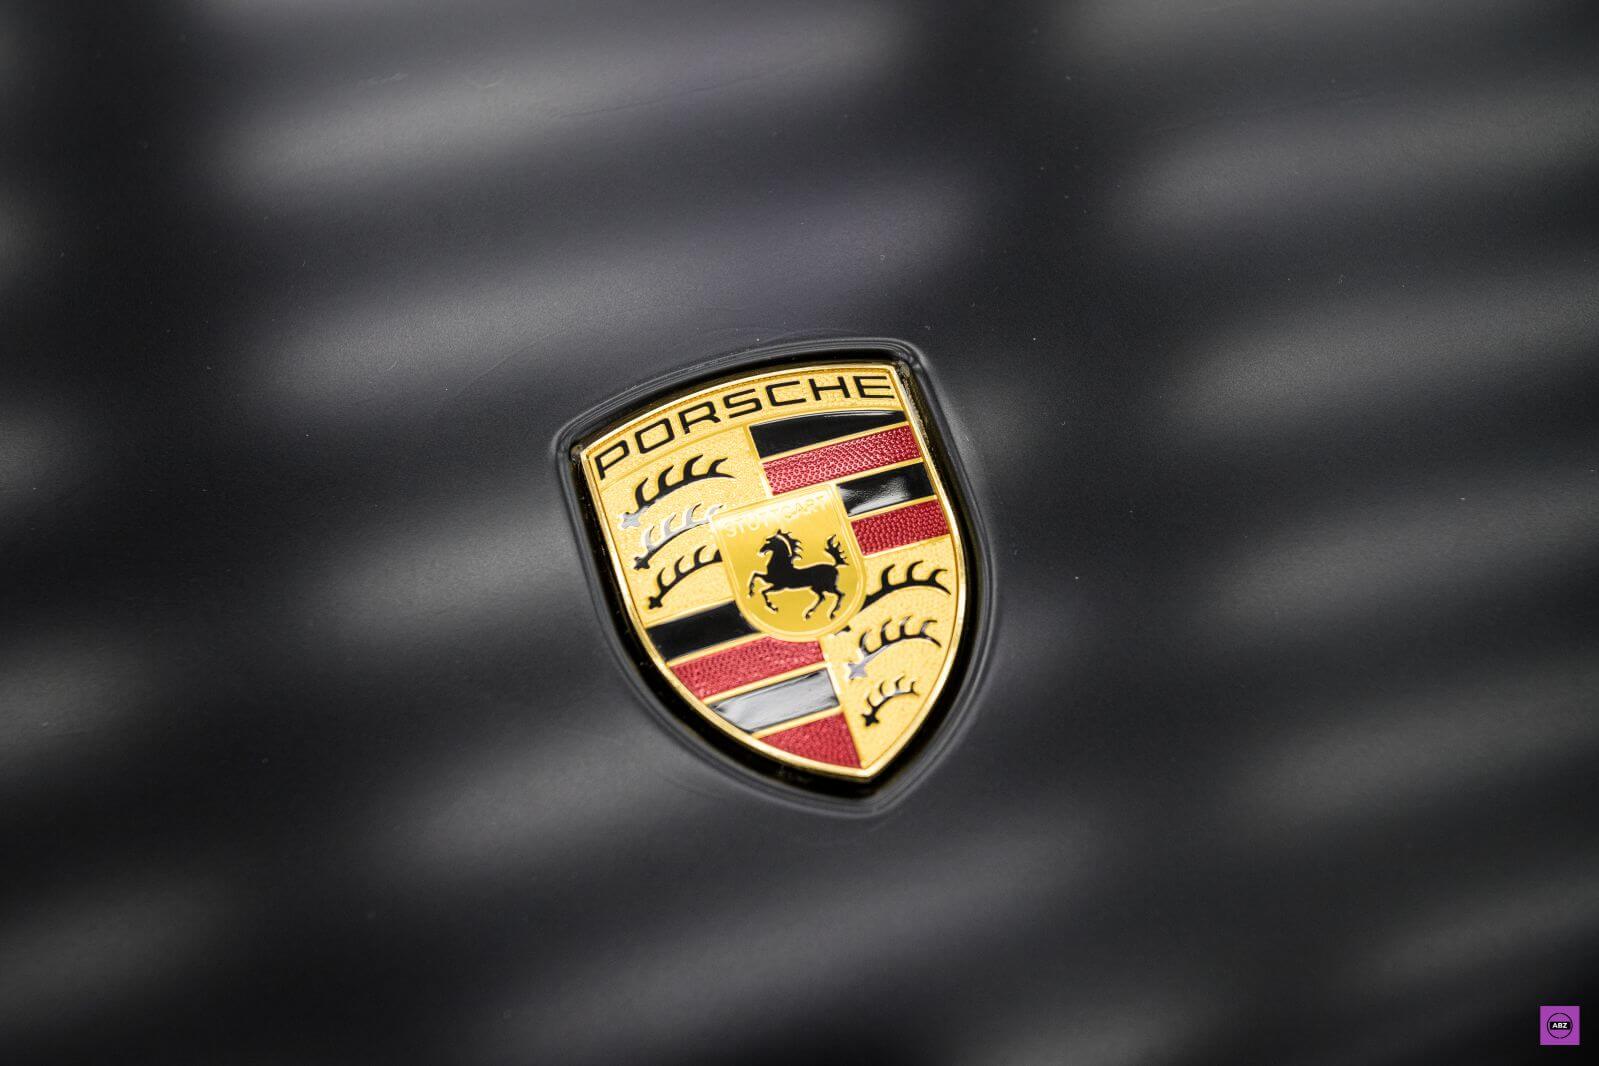 Фото Чёрный Porsche Macan над надежной защитой матового полиуретана LLumar Matt